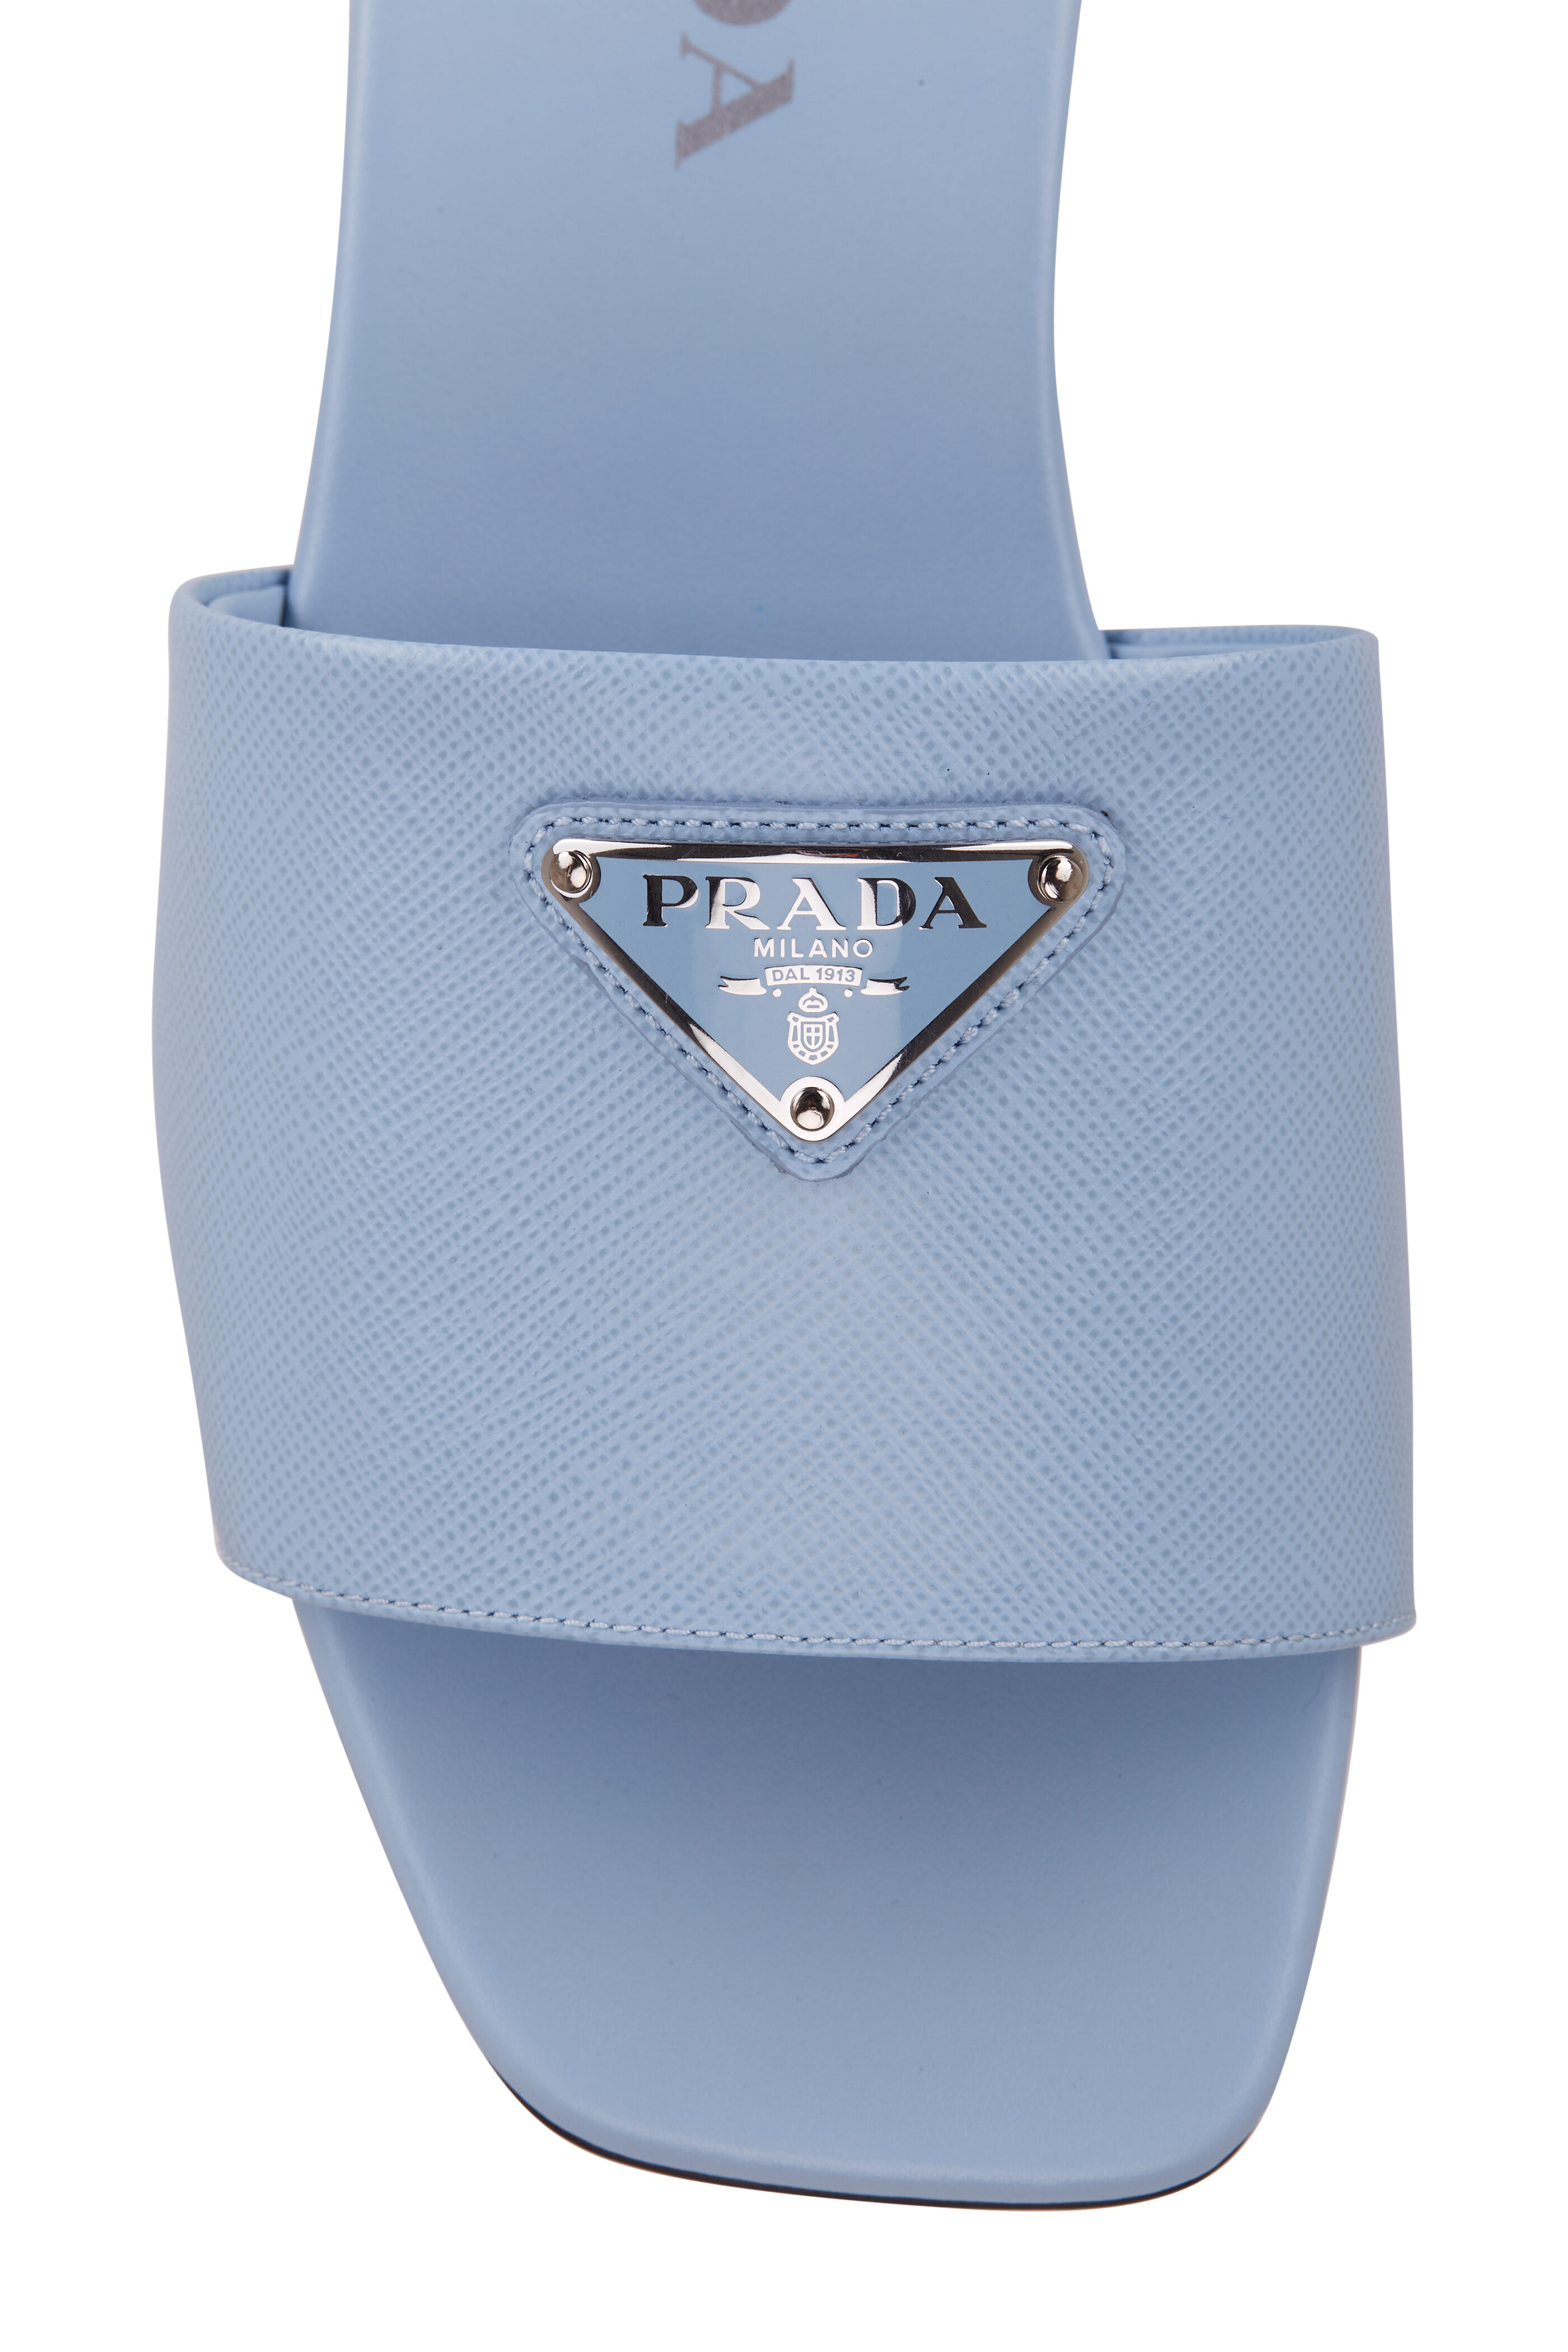 Prada Satin Crystal Mini-Bag Celeste